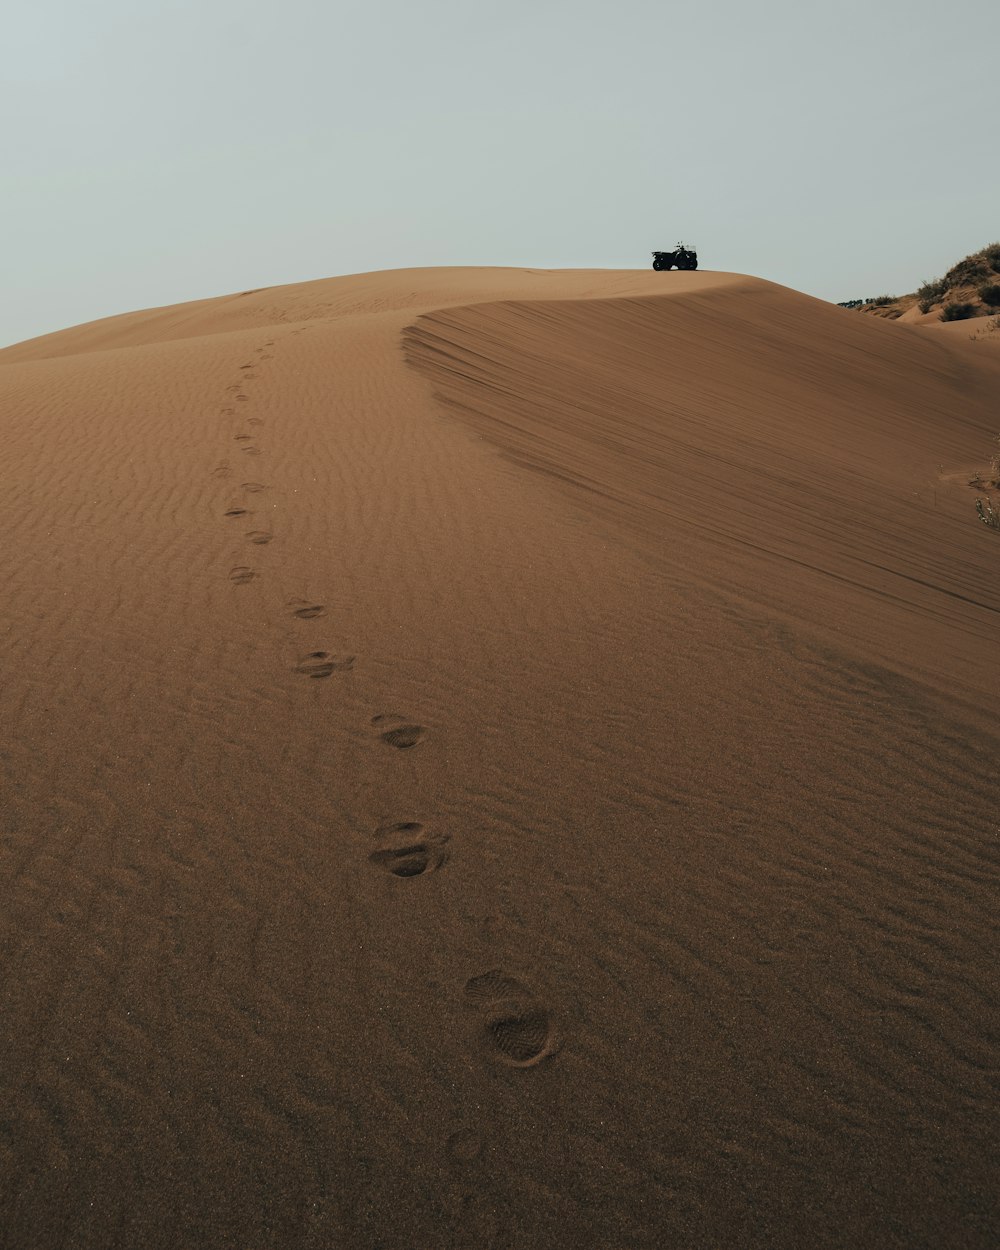 Una jeep che scende da una collina sabbiosa con impronte nella sabbia